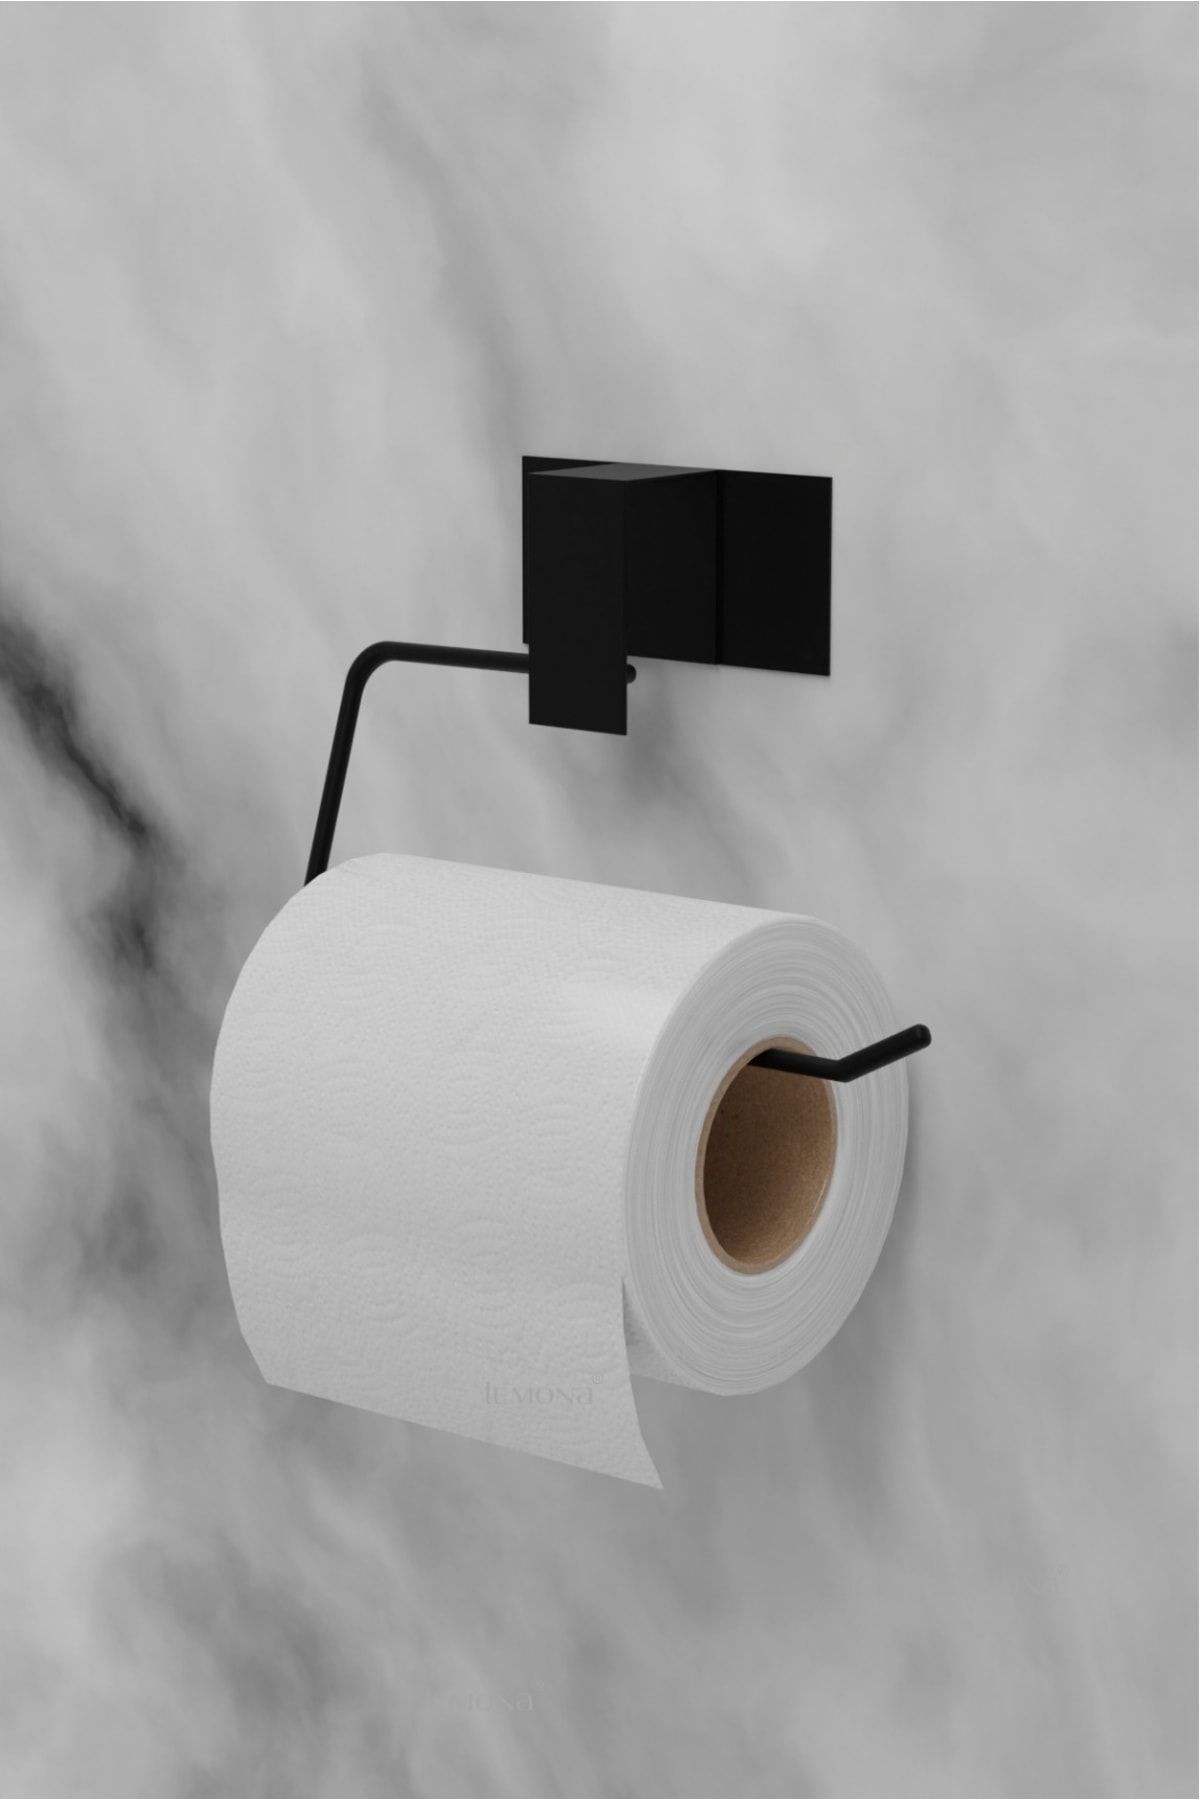 Lemona Siyah Güçlü Yapışkanlı Wc Kağıtlık Tuvalet Kağıtlığı Tuvalet Kağıdı Askısı Ultra Sağlam